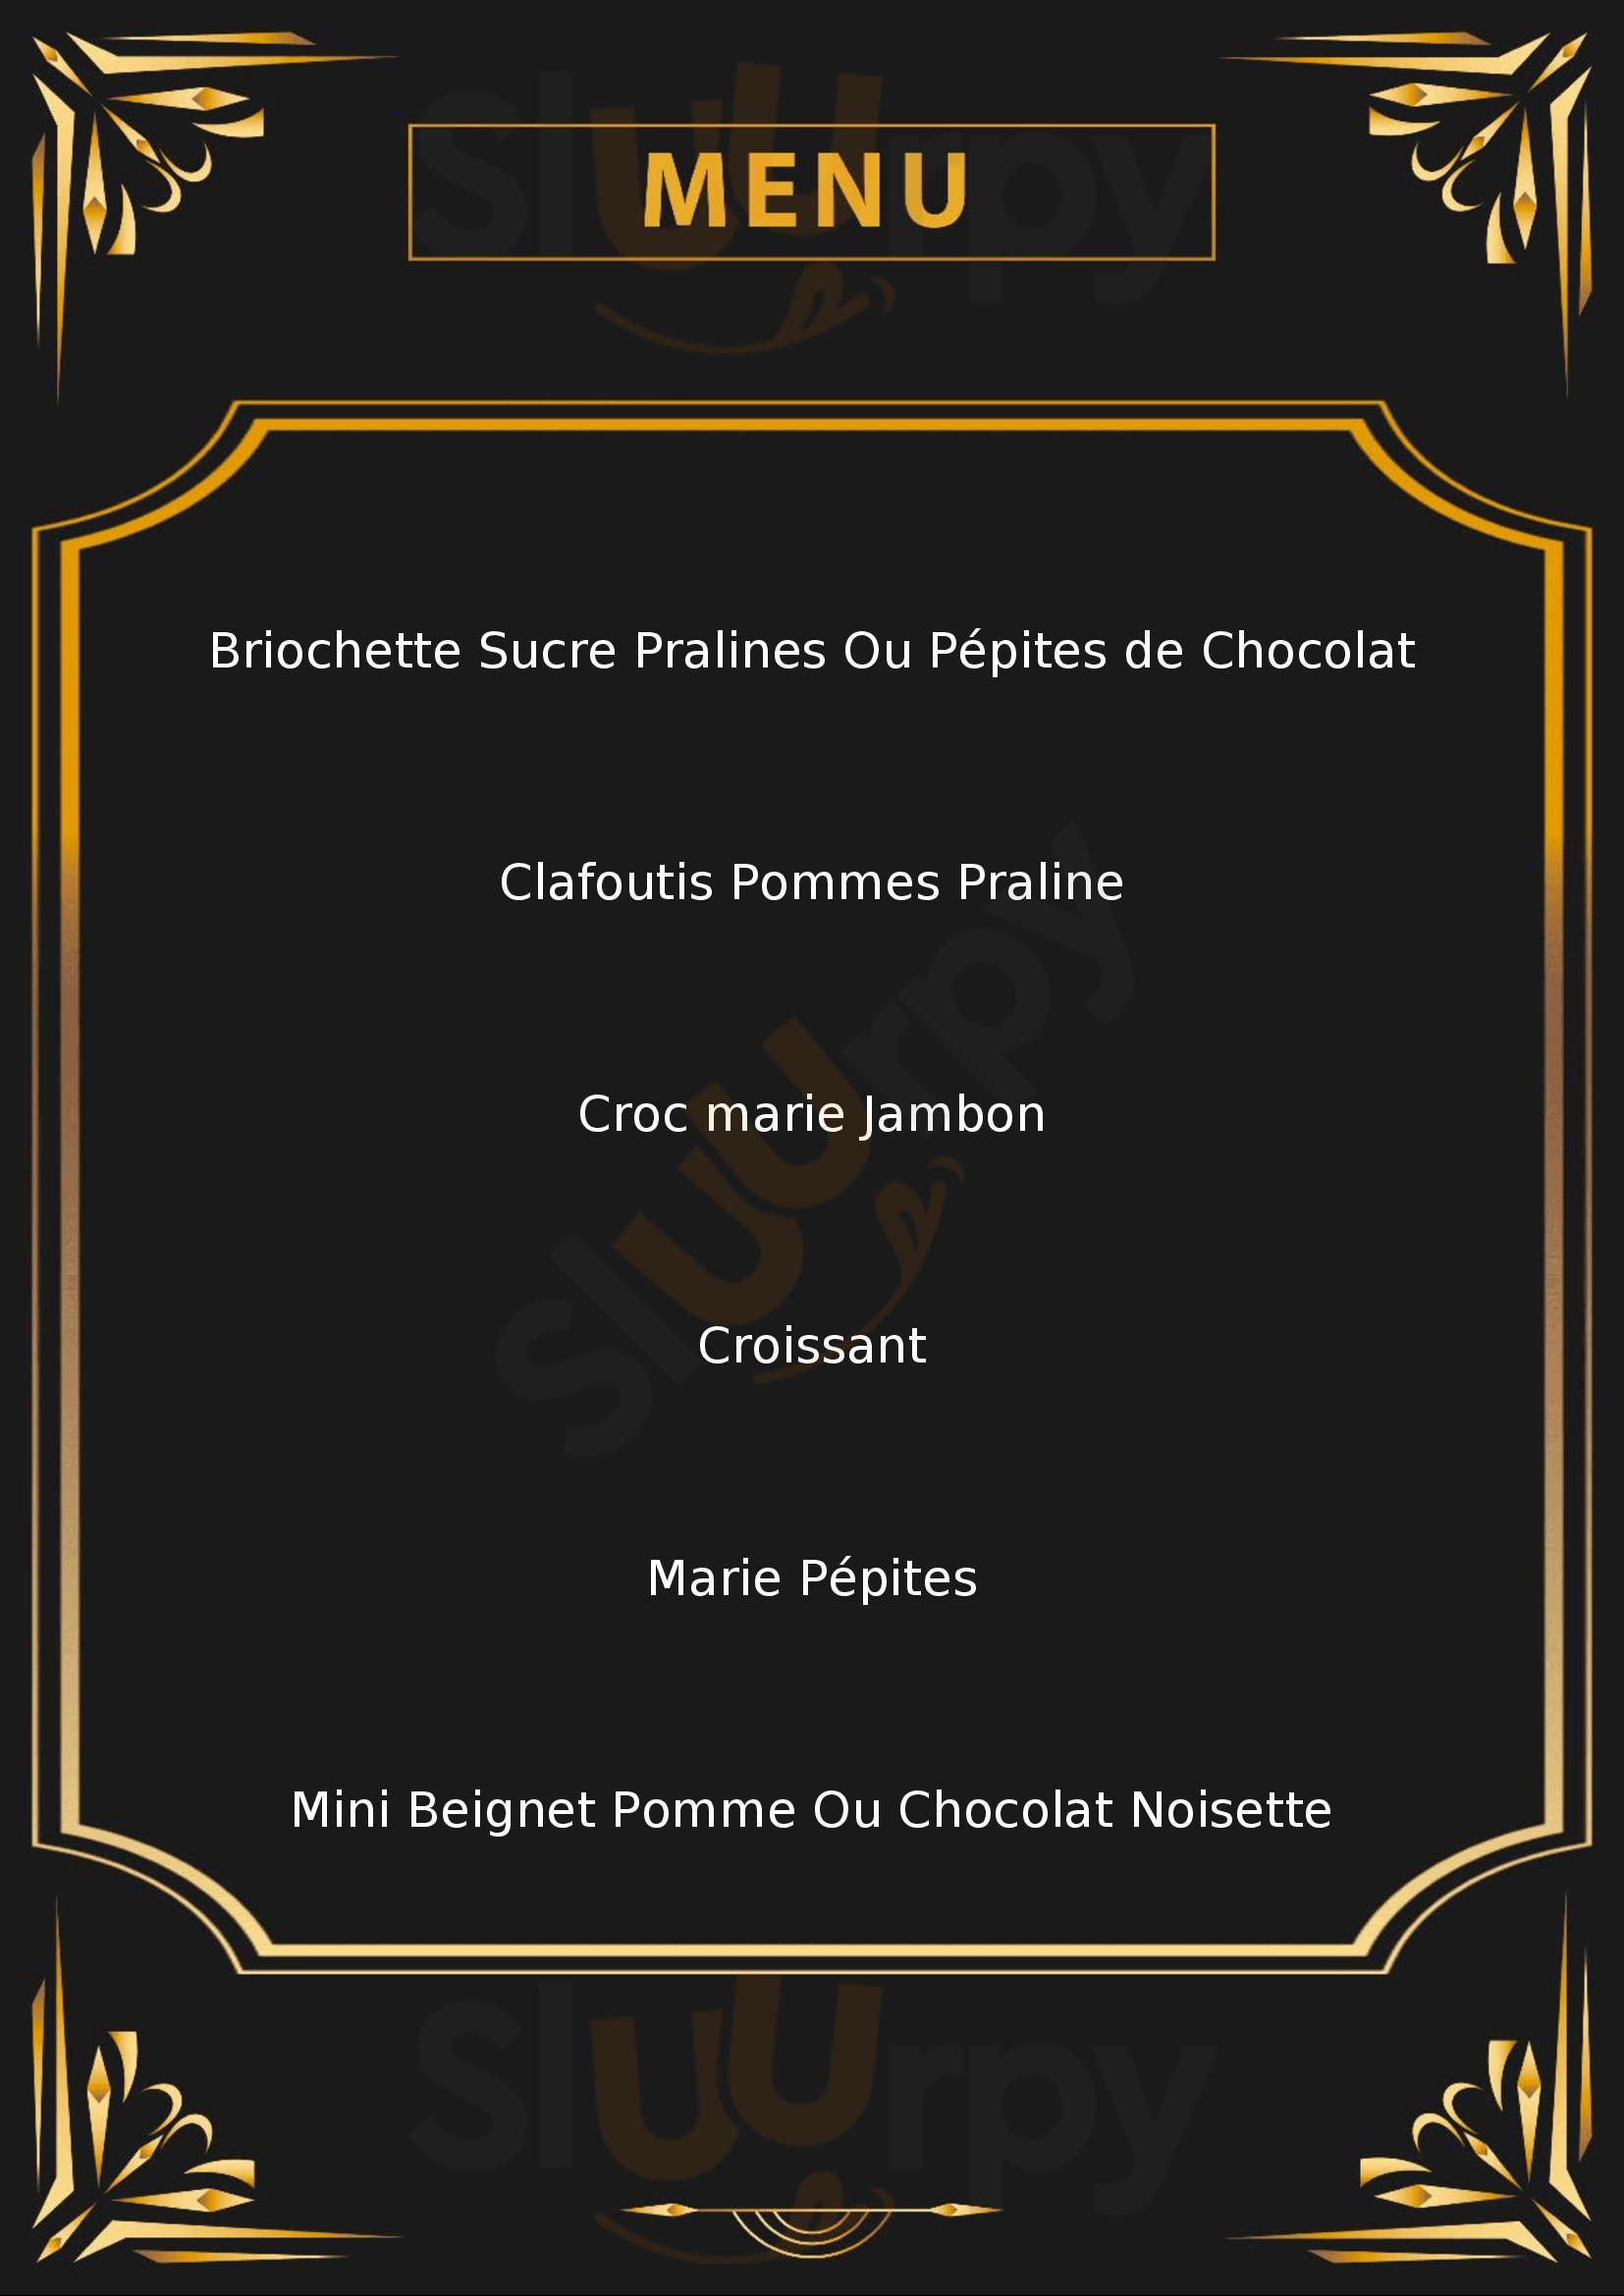 Boulangerie Marie Blachere Tours Menu - 1